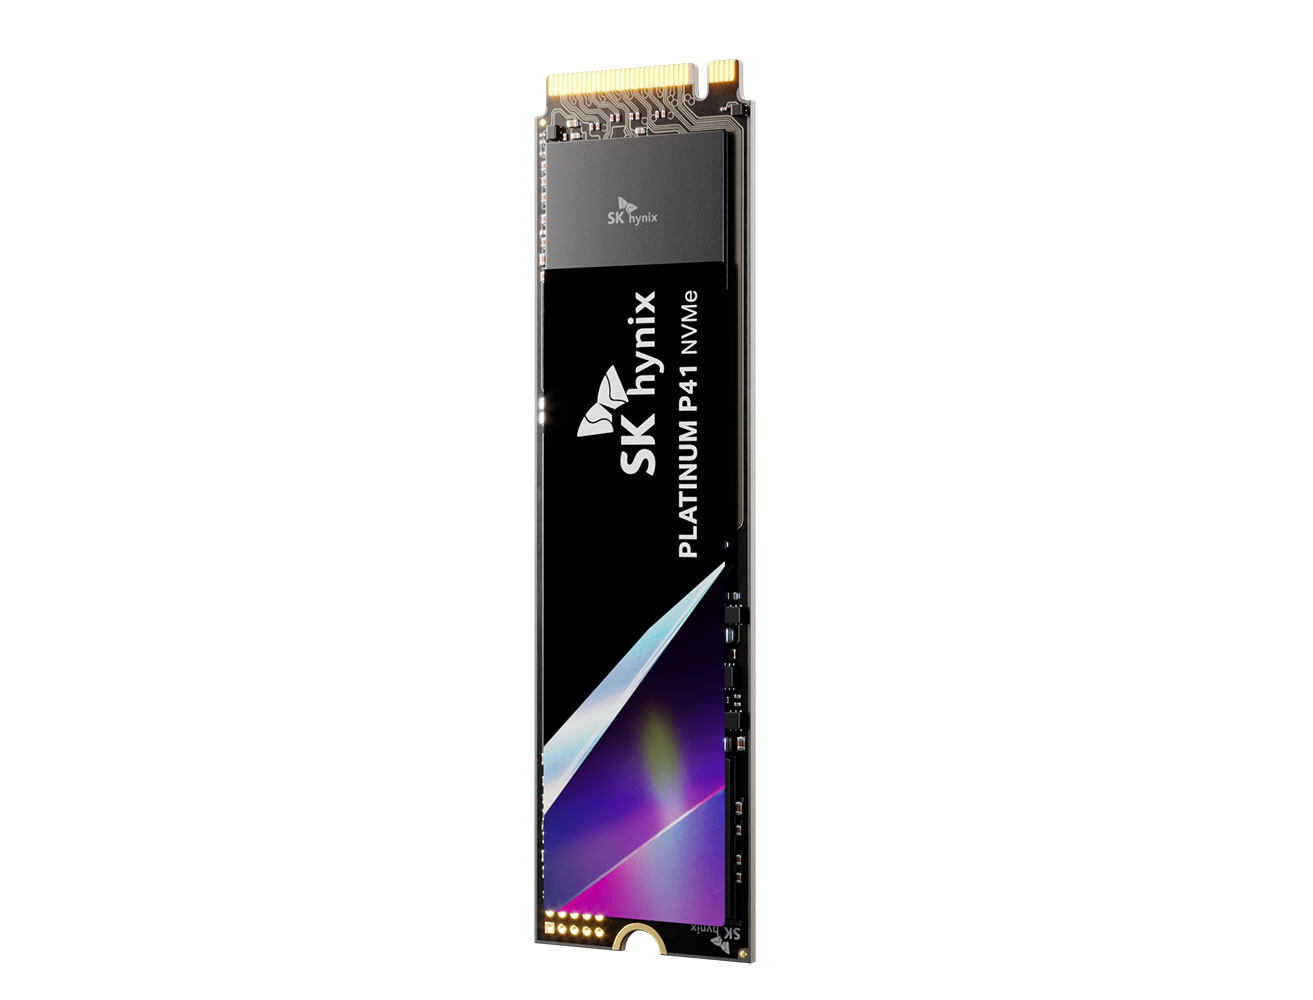 CES: SK hynix Platinum P41 PCIe NVMe Gen 4.0 M.2 2280 Up to 2TB SSD -  StorageNewsletter